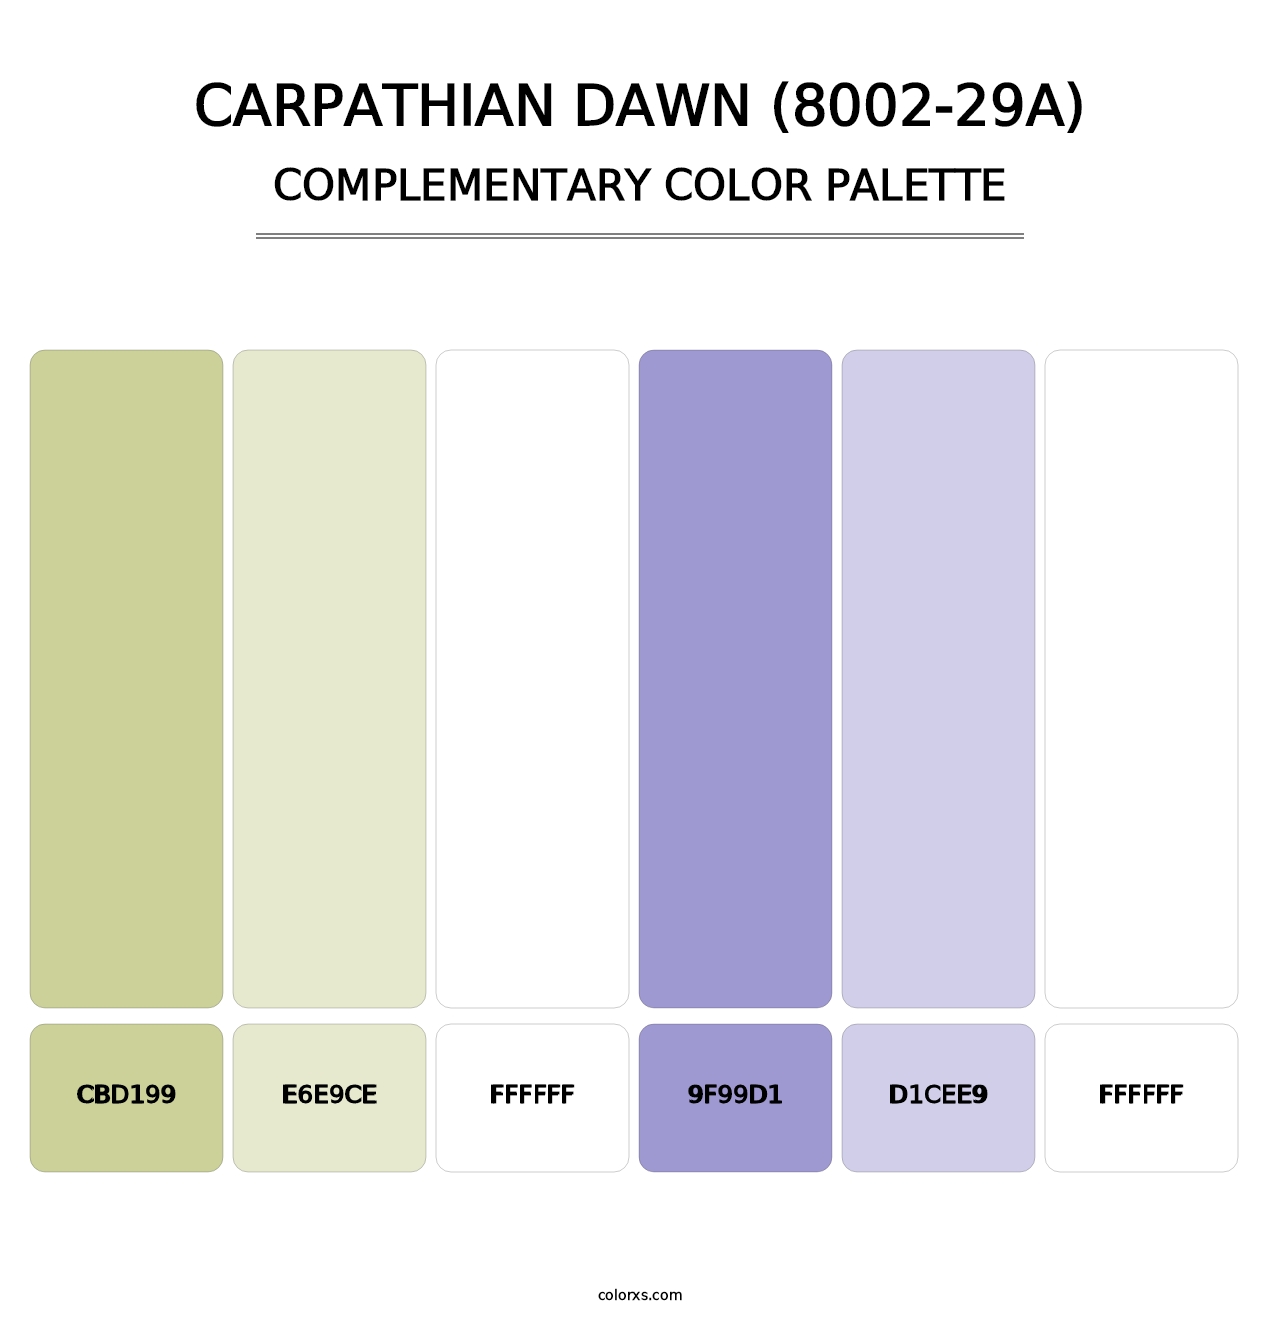 Carpathian Dawn (8002-29A) - Complementary Color Palette